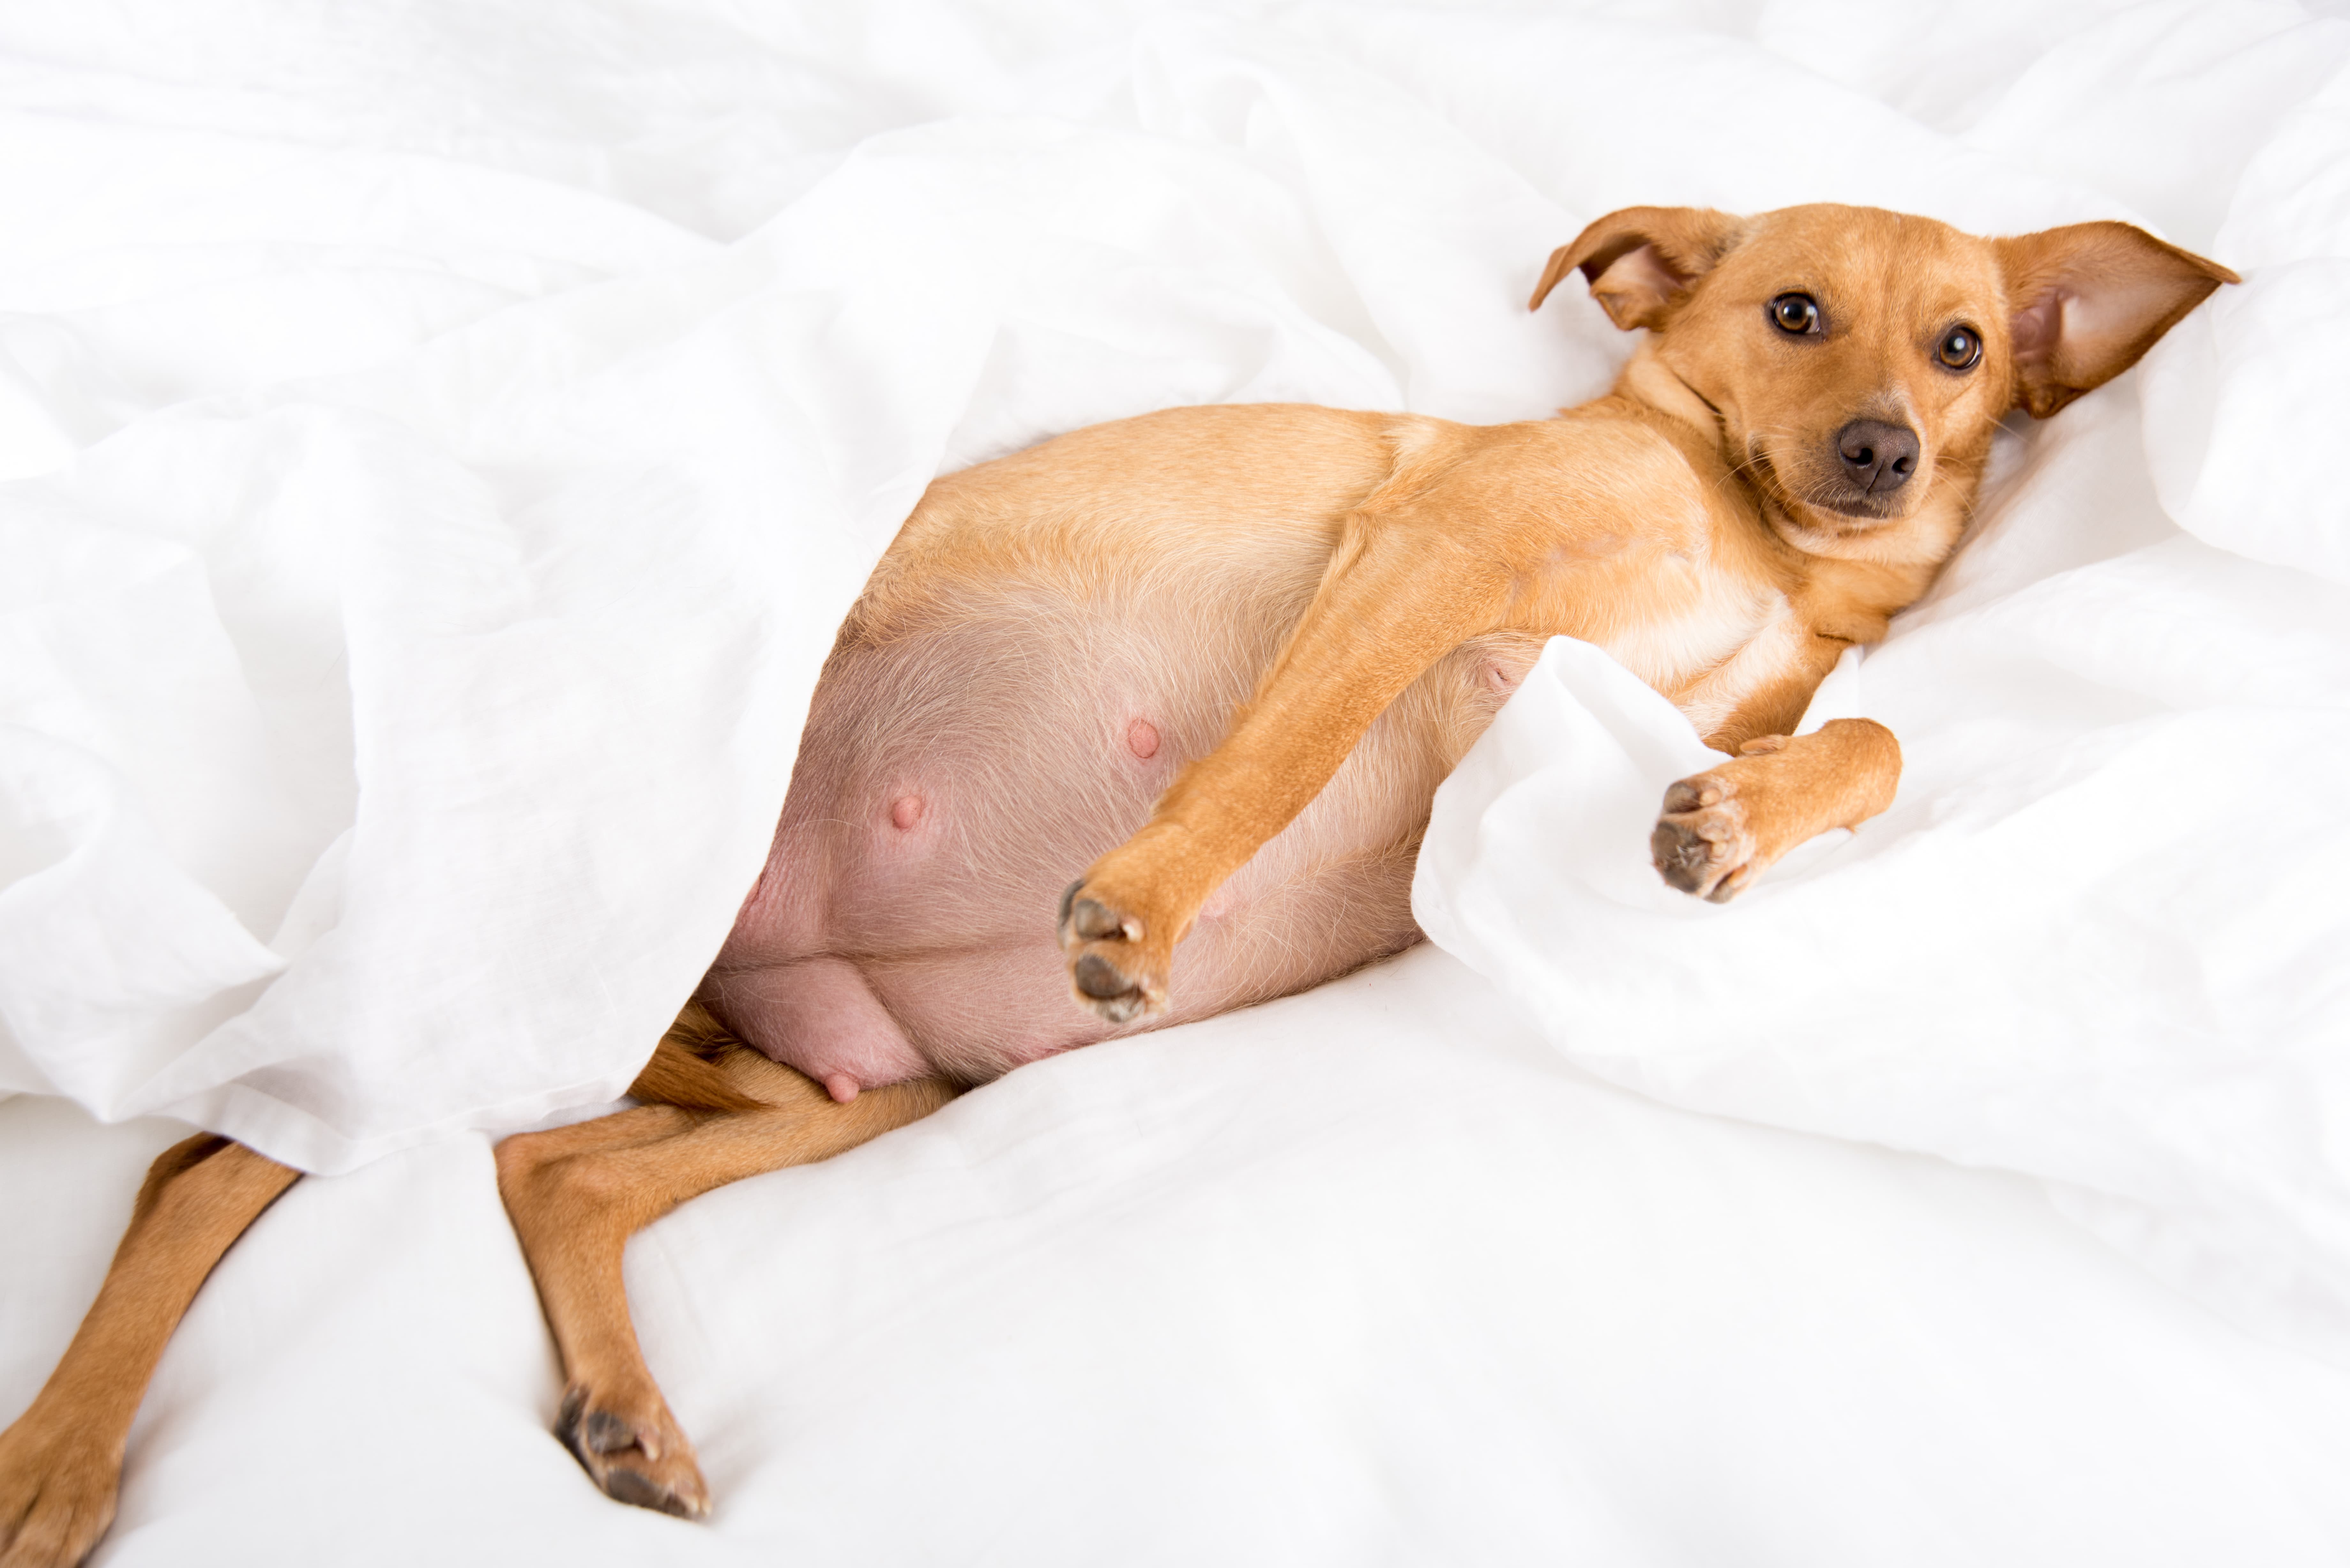  Imagem de uma cachorra na cor caramelo grávida, deitada de barriga para cima em um edredom branco.